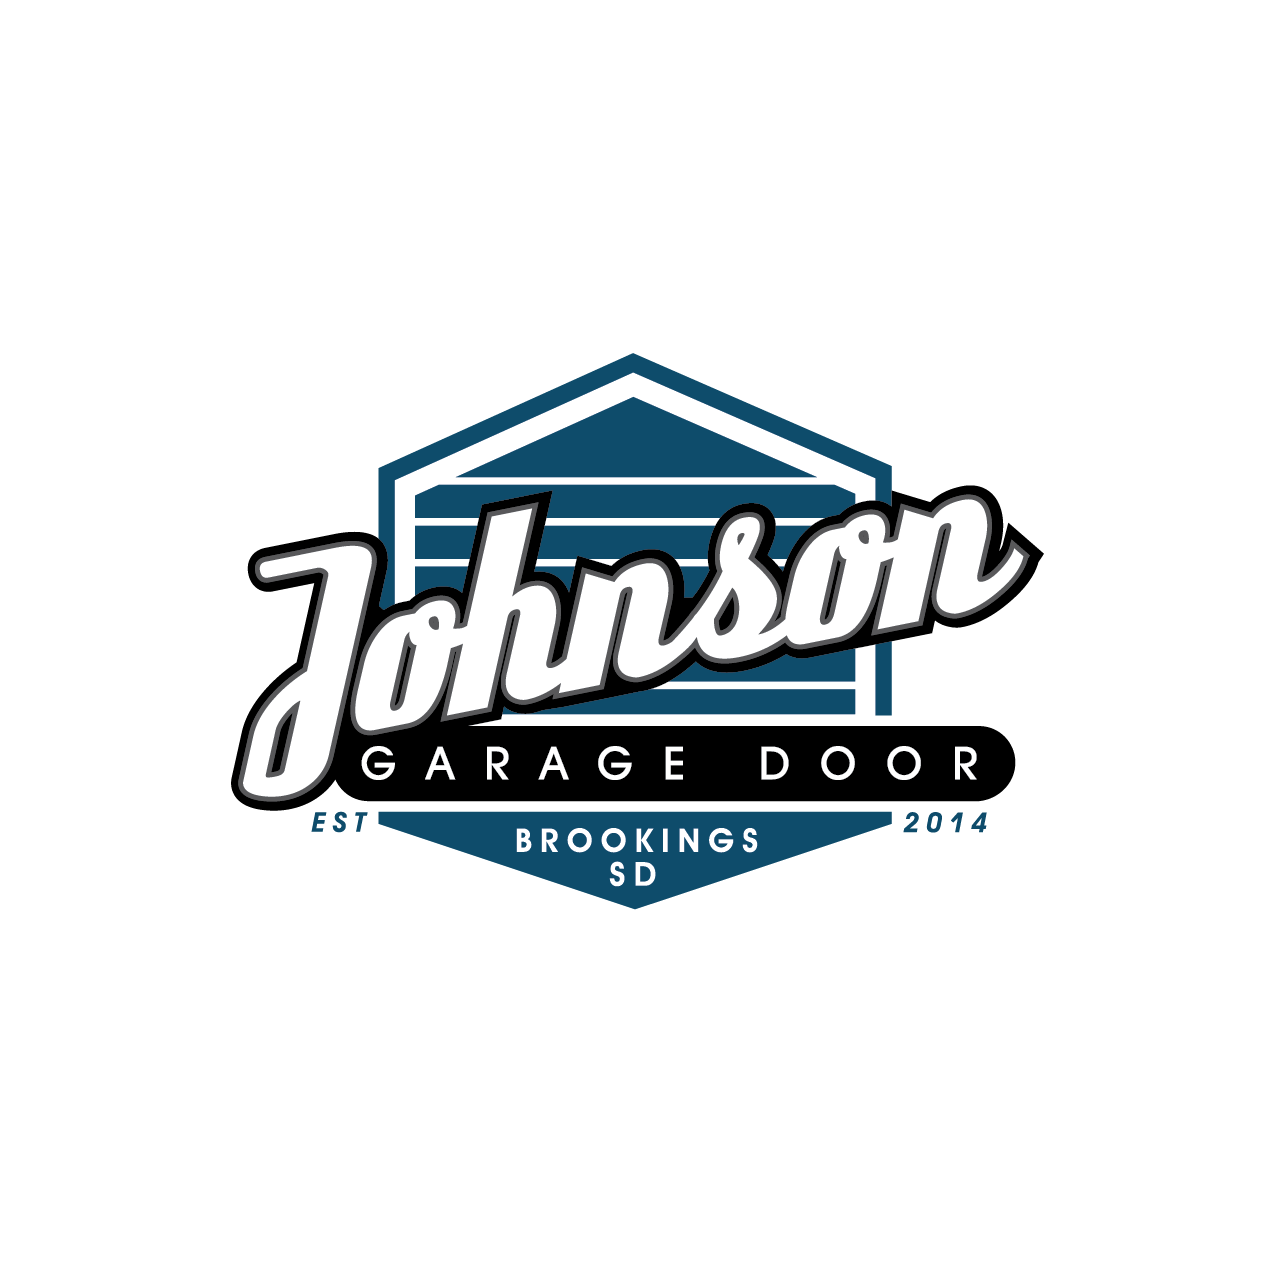 Johnson Garage Door